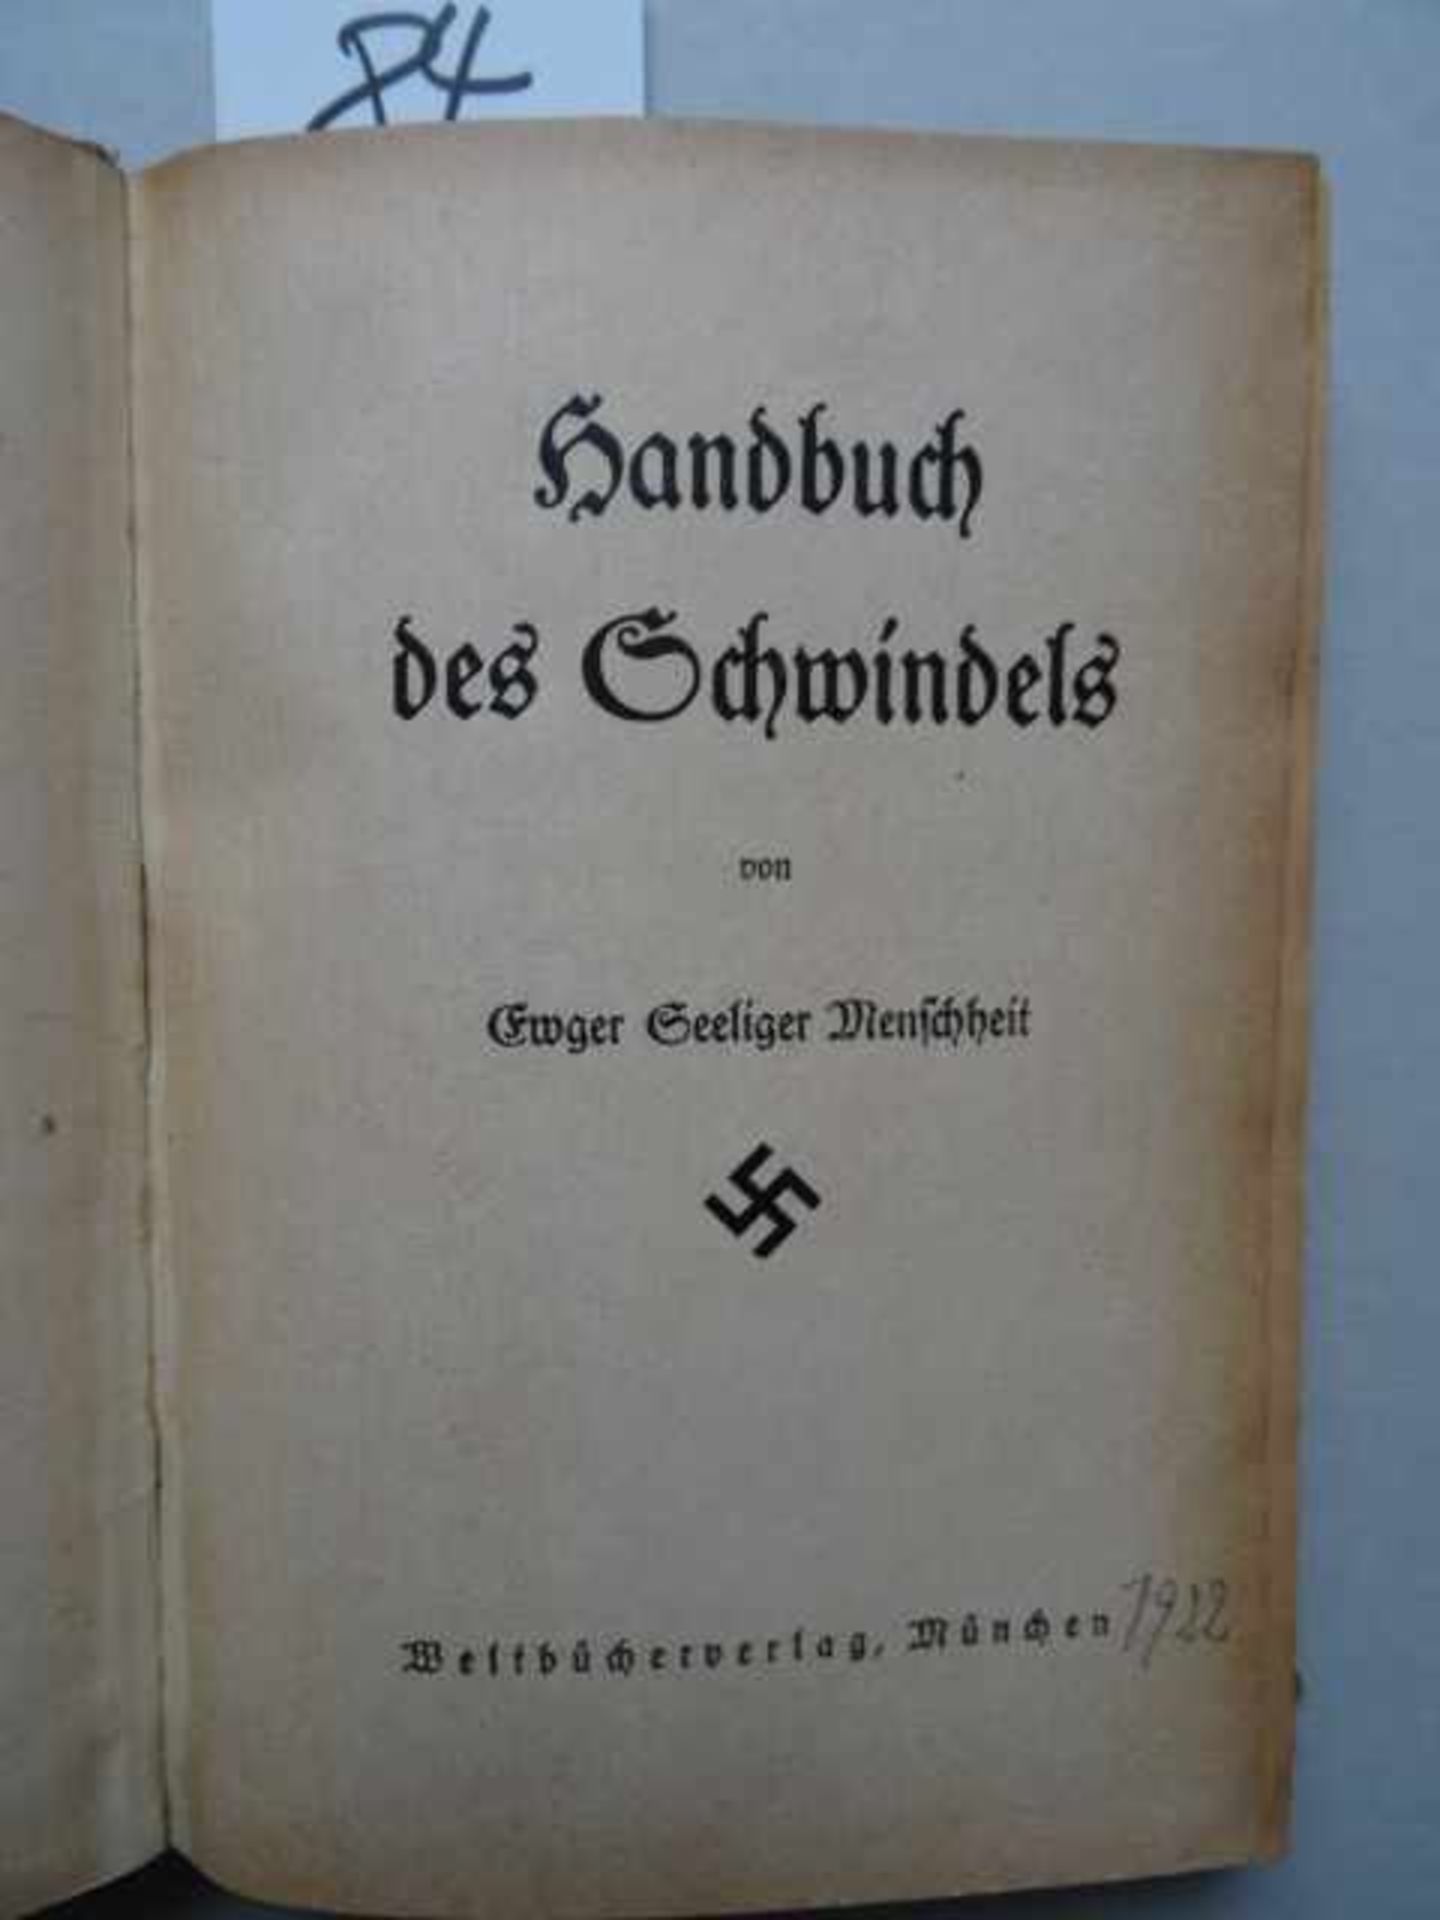 Seeliger, E.G. Handbuch des Schwindels. München, Weltbücherverlag, 1922. 232 S., 4 Bll. OHlwd. mit